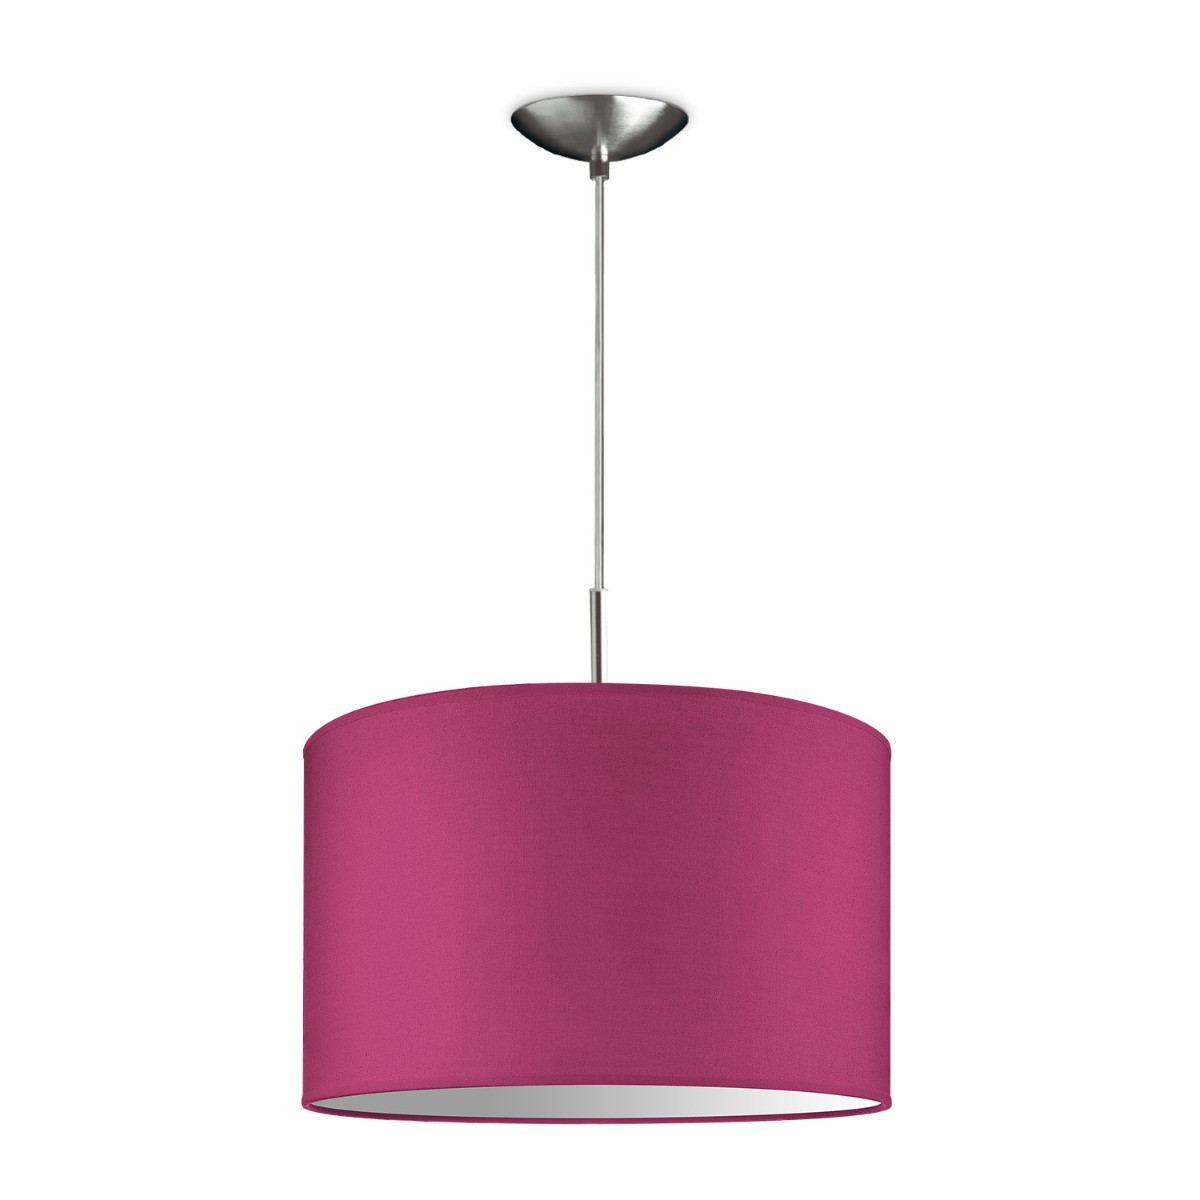 Light depot - hanglamp tube deluxe bling Ø 35 cm - roze - Outlet